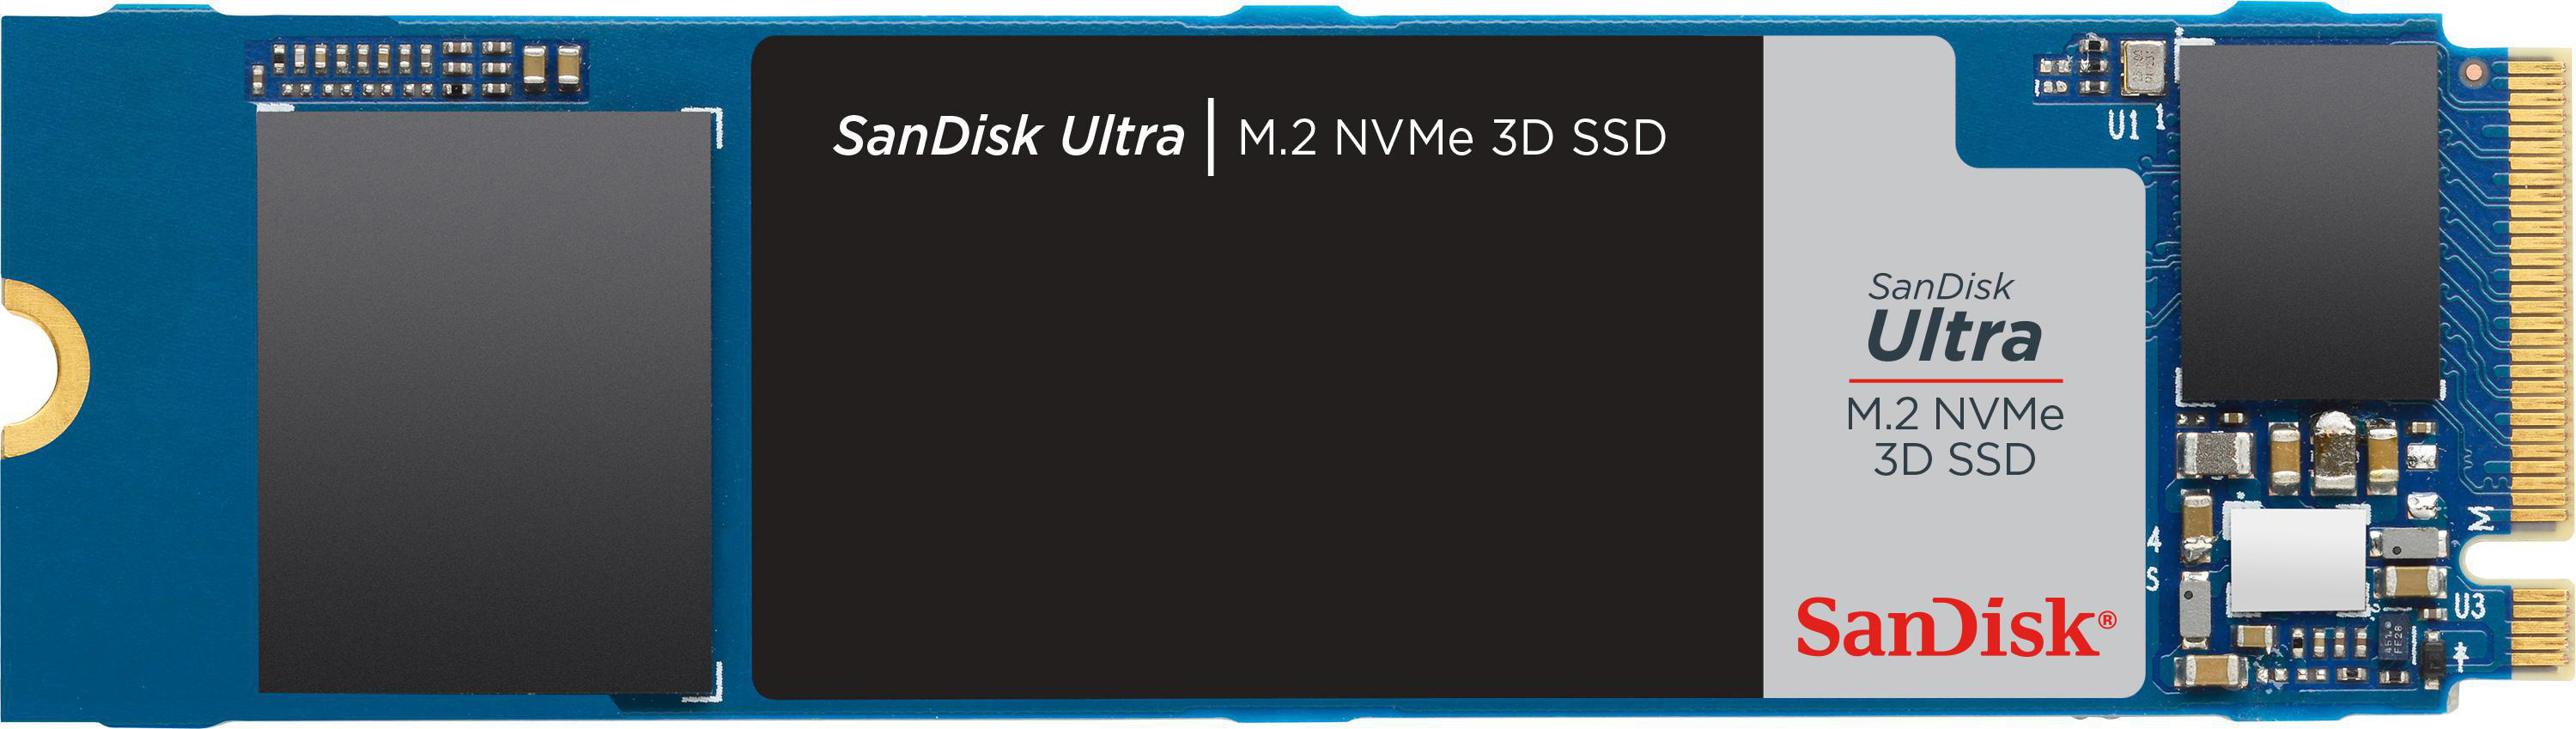 SANDISK Ultra 3D Speicher, 1 TB NVMe, intern Interner M.2 Speicher via